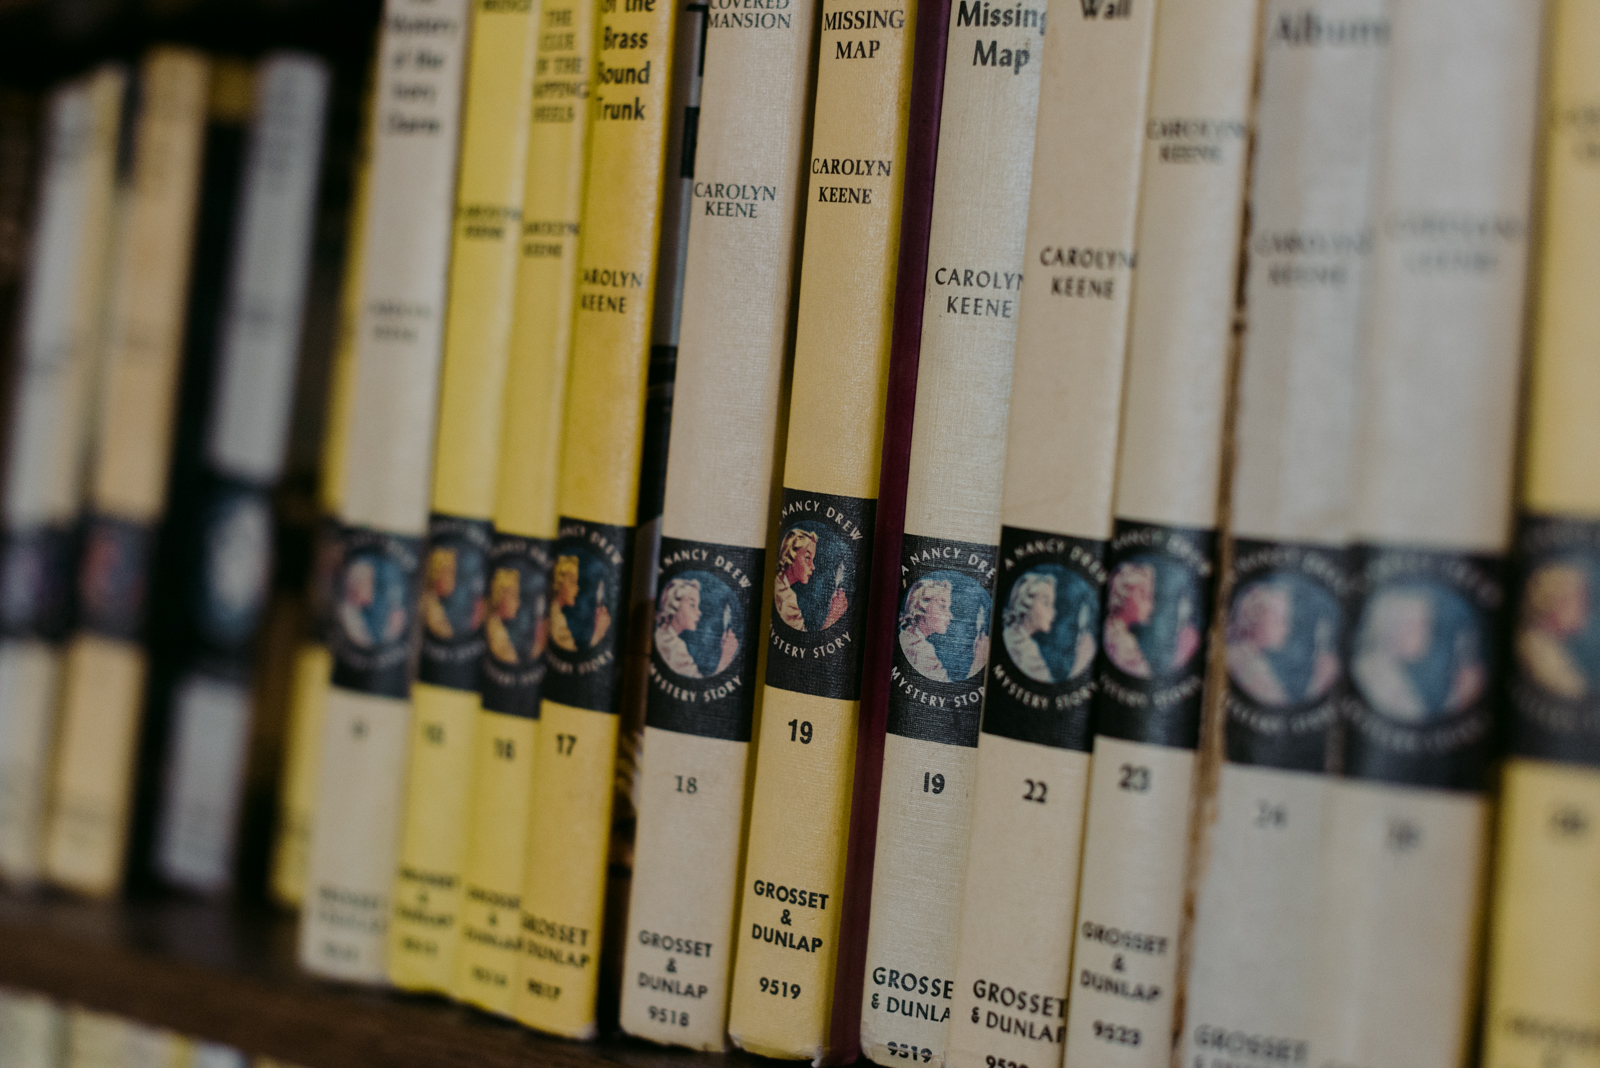 Vintage Nancy Drew novels on a bookshelf